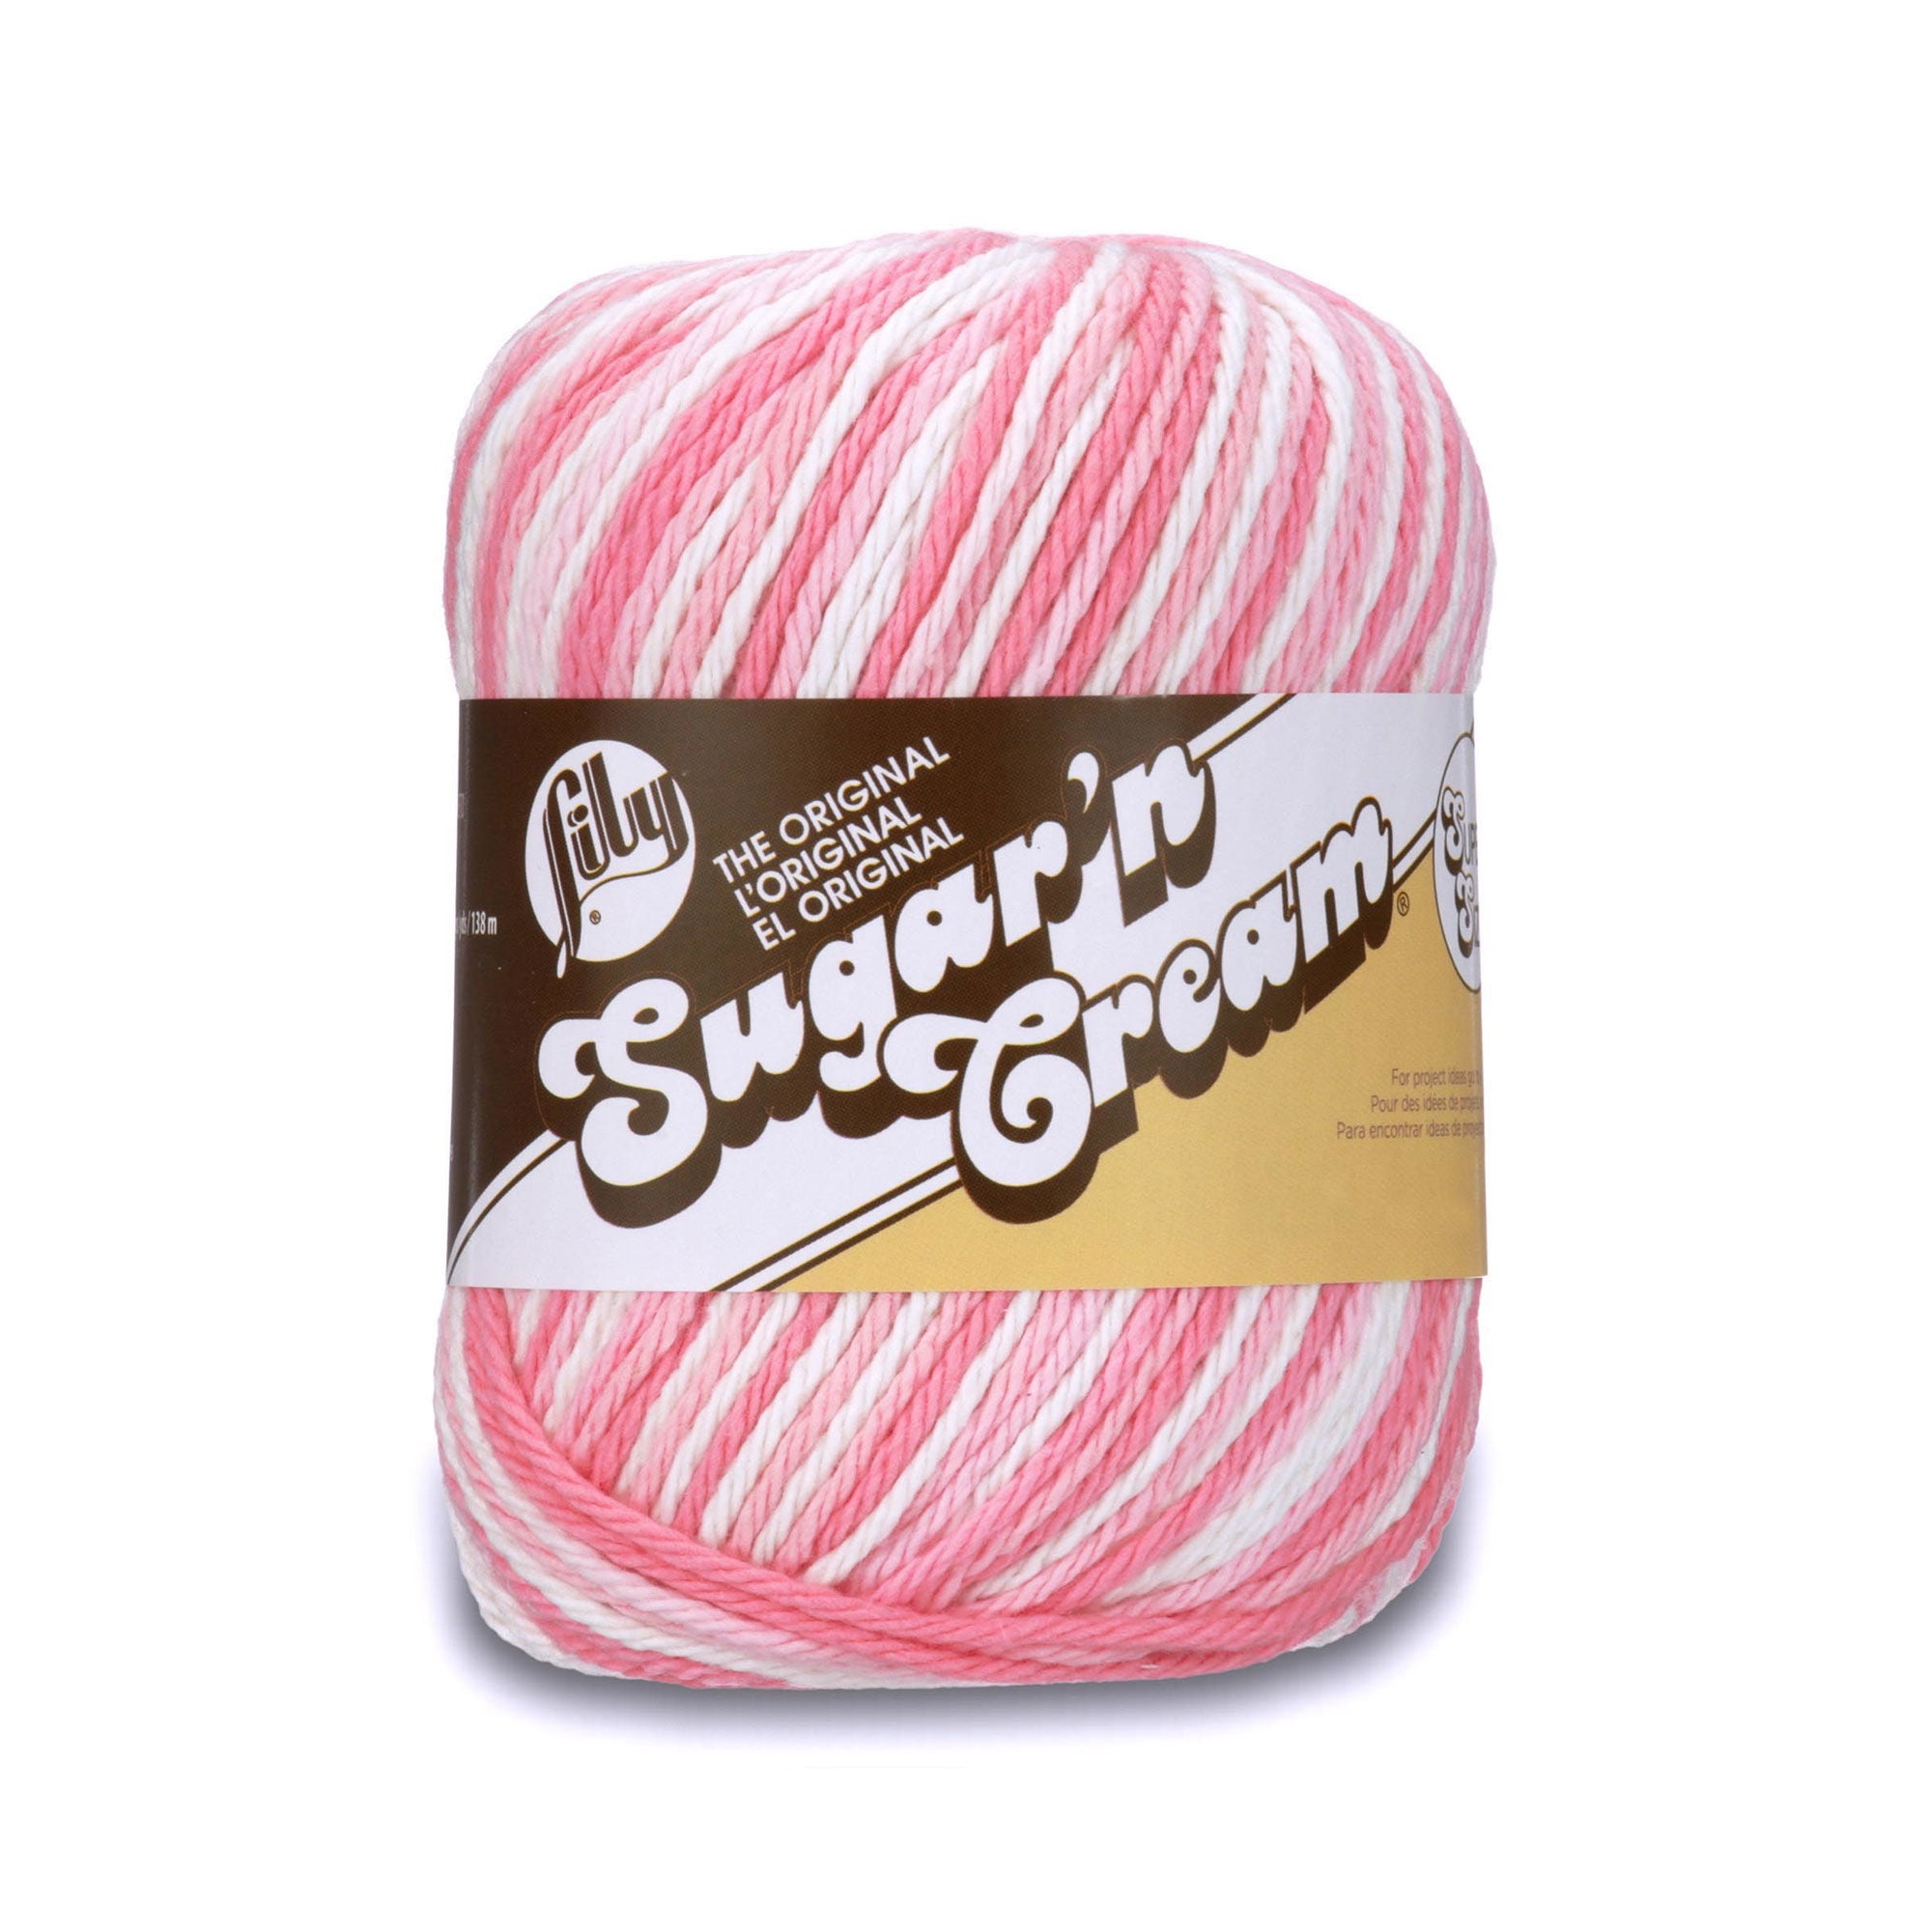 Lily Sugar'N Cream Super Size Faded Denim Yarn - 6 Pack of 85g/3oz